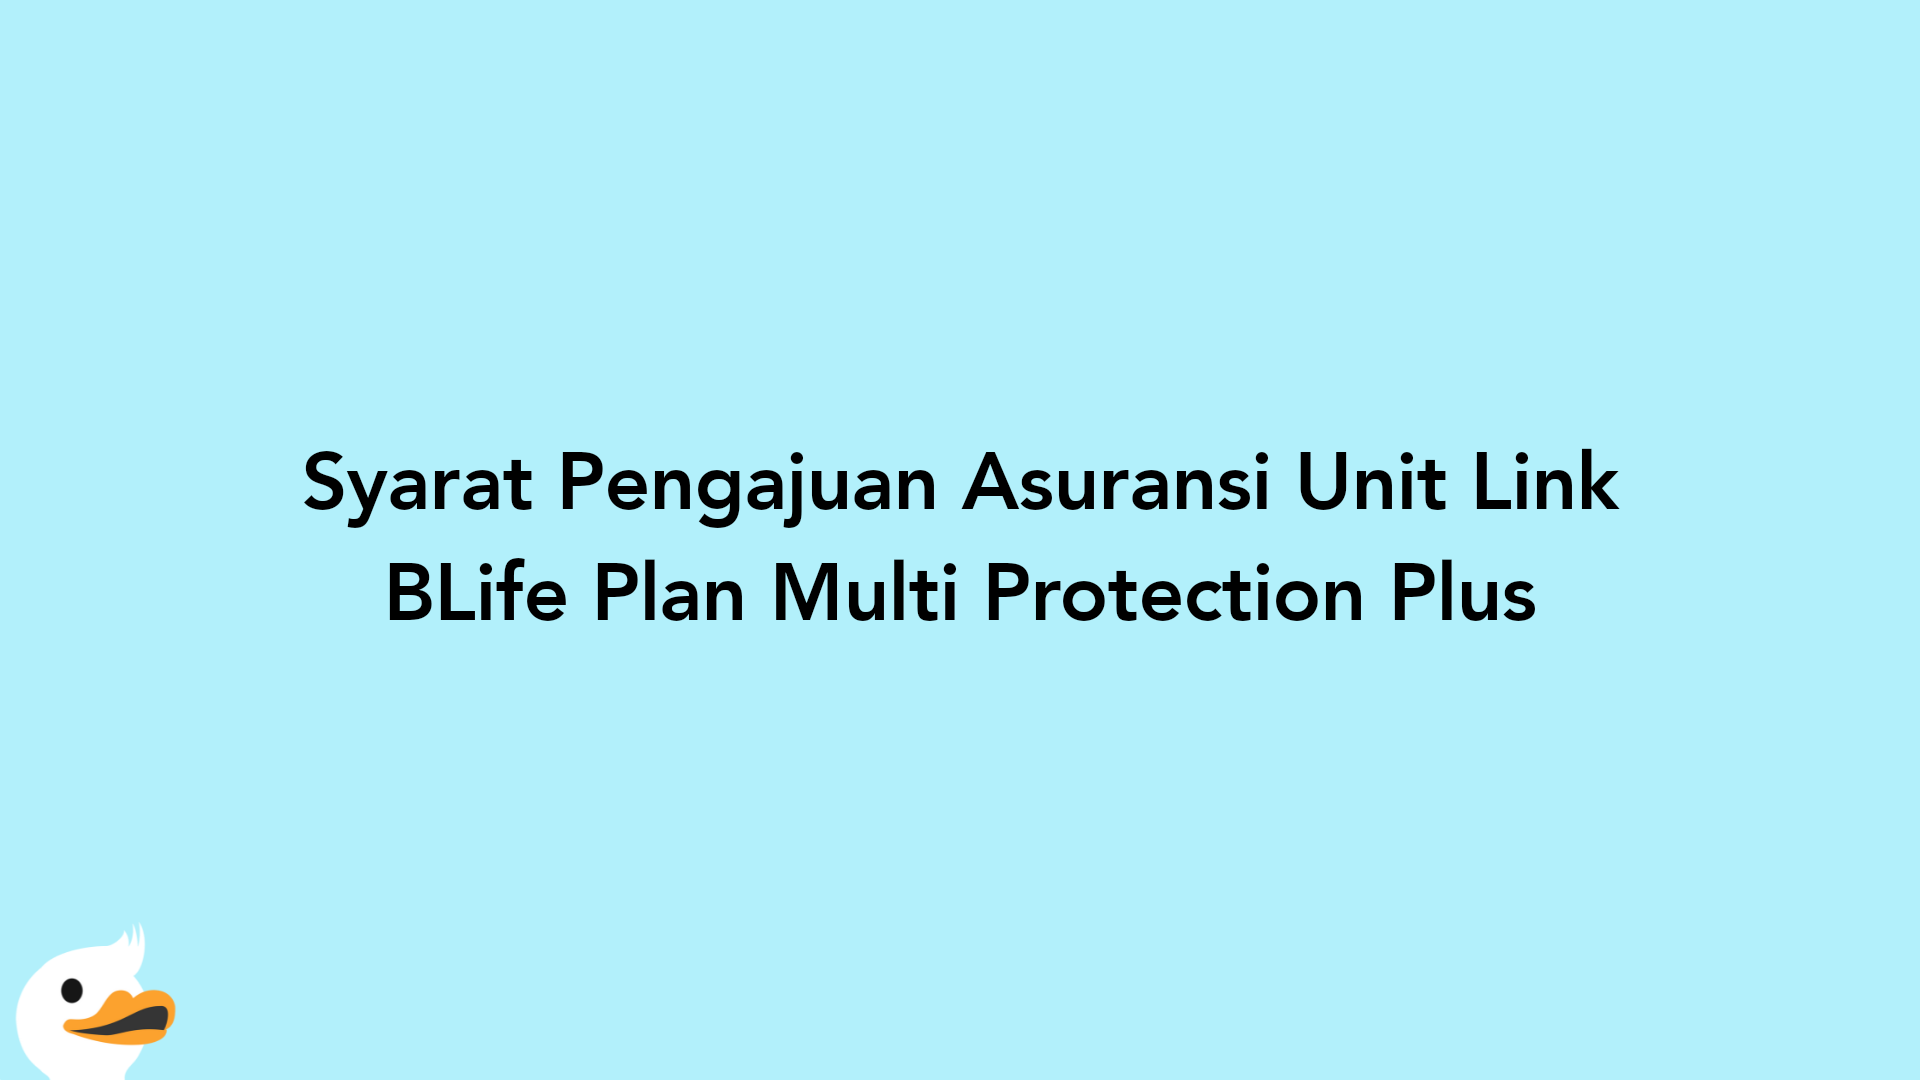 Syarat Pengajuan Asuransi Unit Link BLife Plan Multi Protection Plus